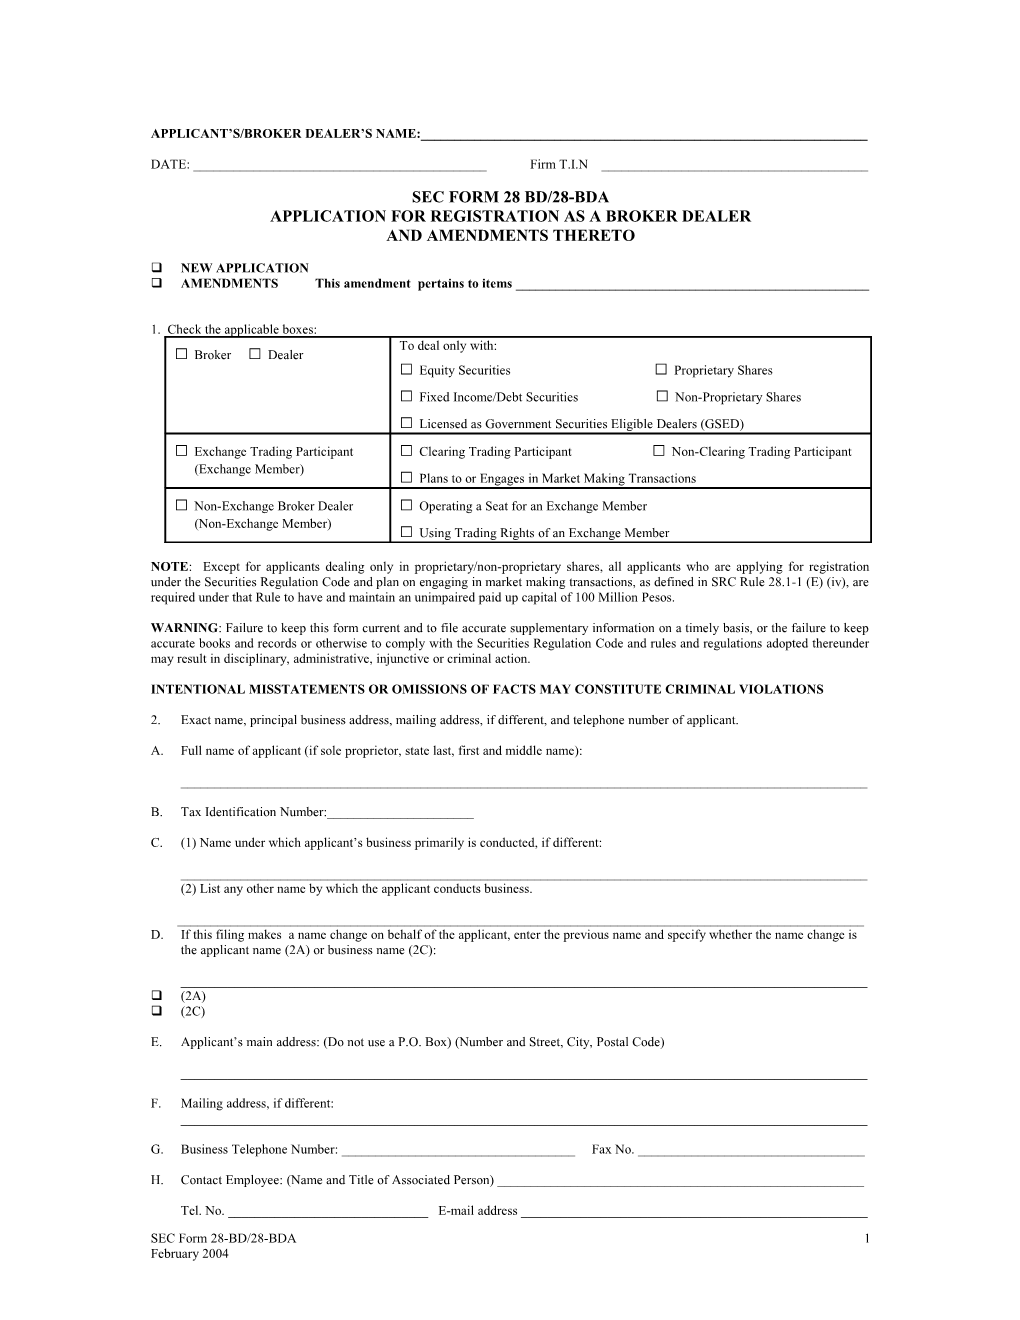 SEC Form 28-BD/28-BDA